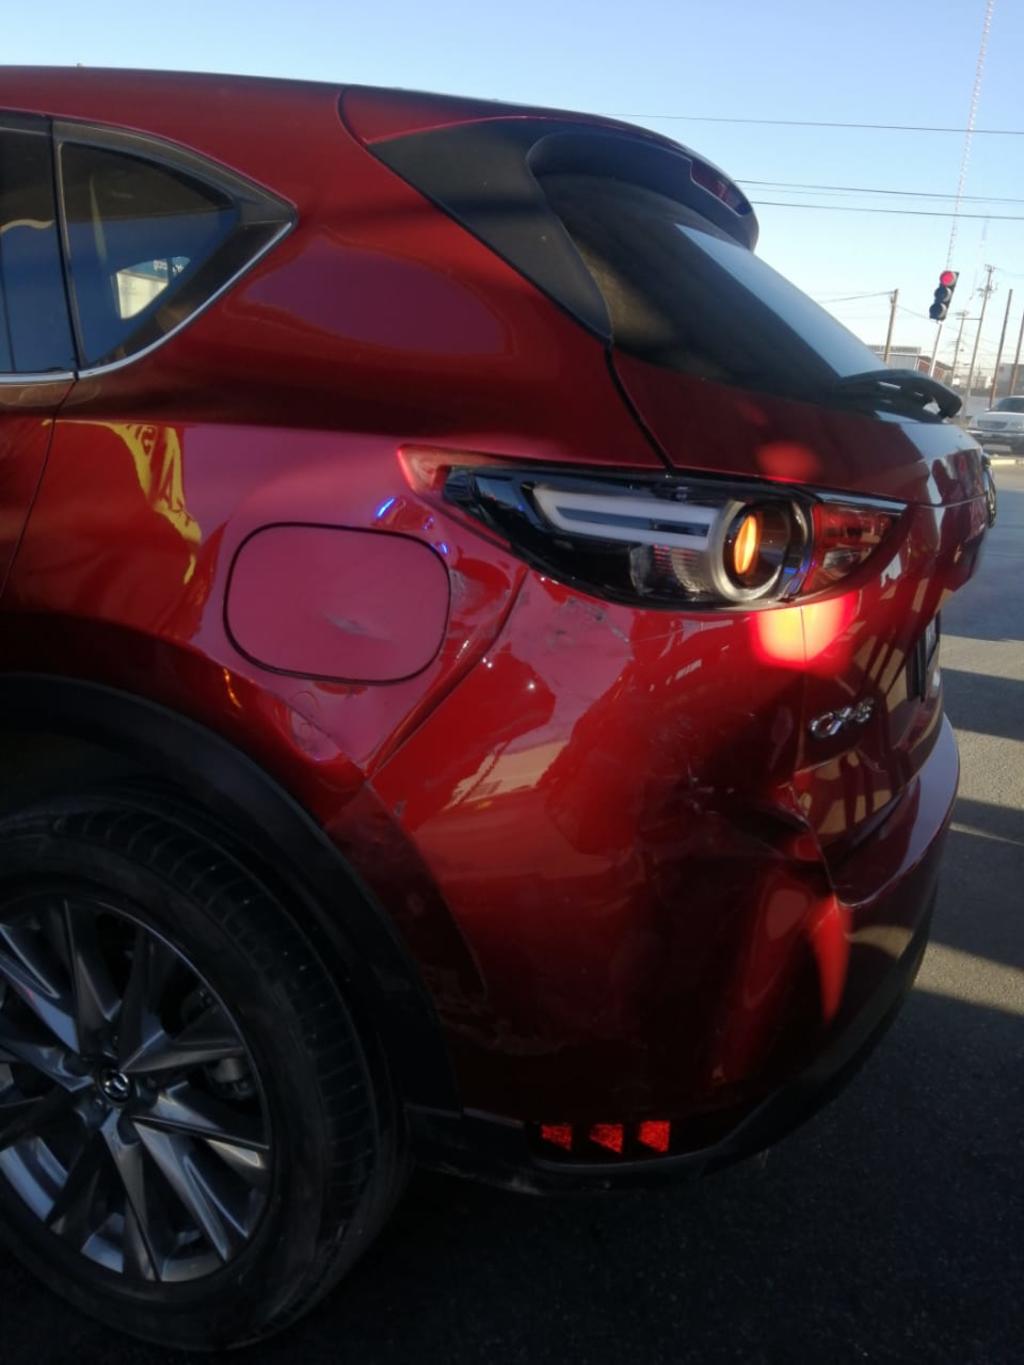 La camioneta señalada como responsable es una Mazda CX5, modelo 2017, color rojo, conducida por Berenice de 25 años de edad.

(EL SIGLO DE TORREÓN)